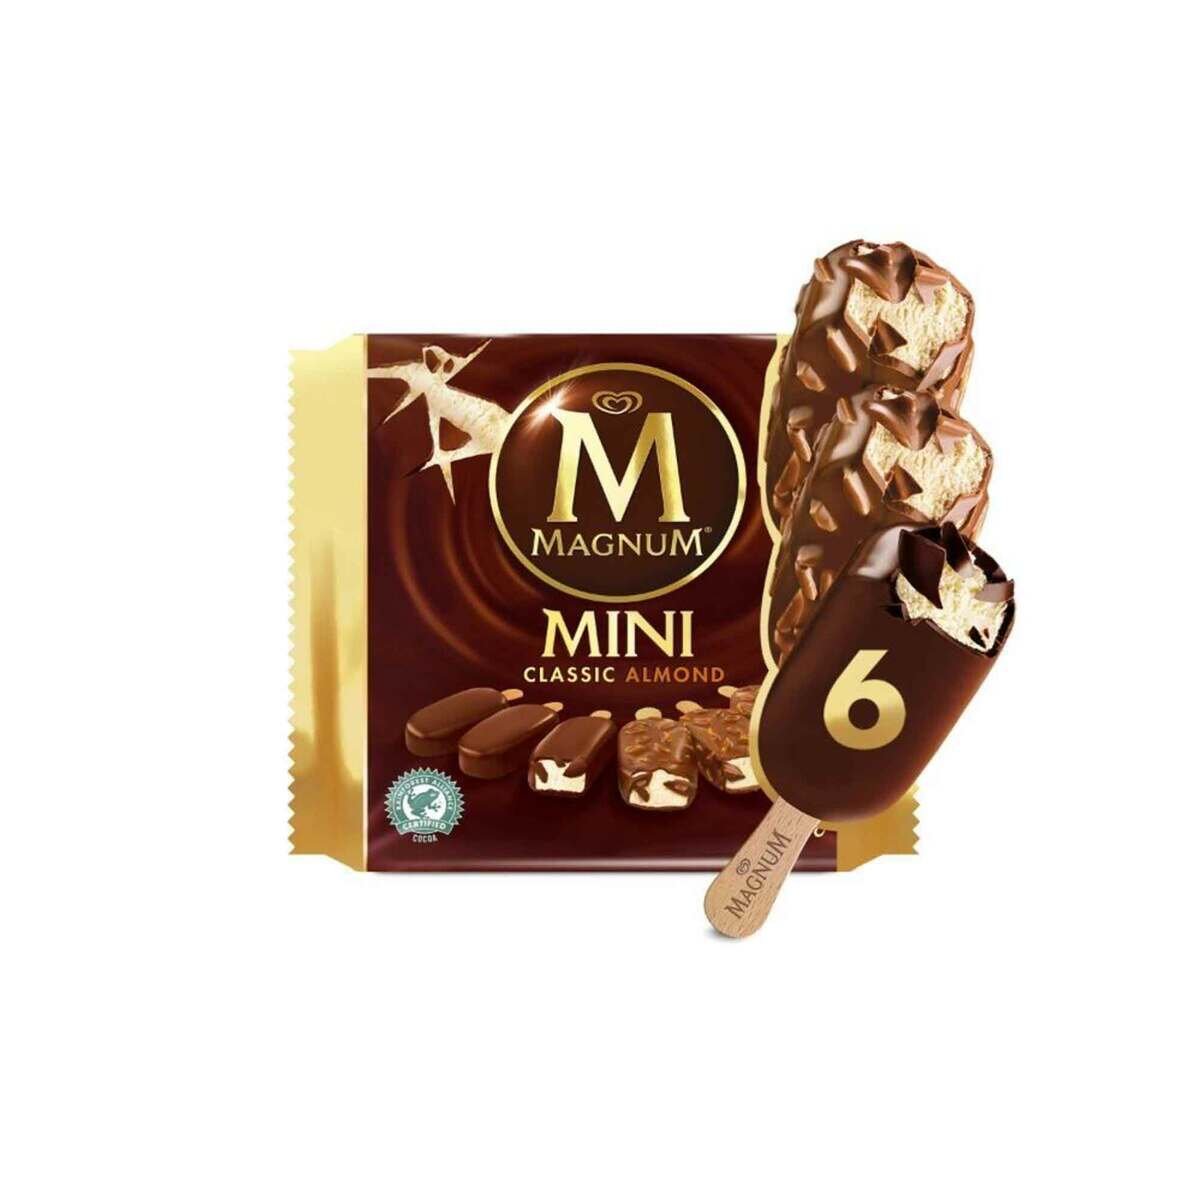 Magnum Classic Almond Mini Ice Cream Stick Value Pack 6 pcs 345 ml